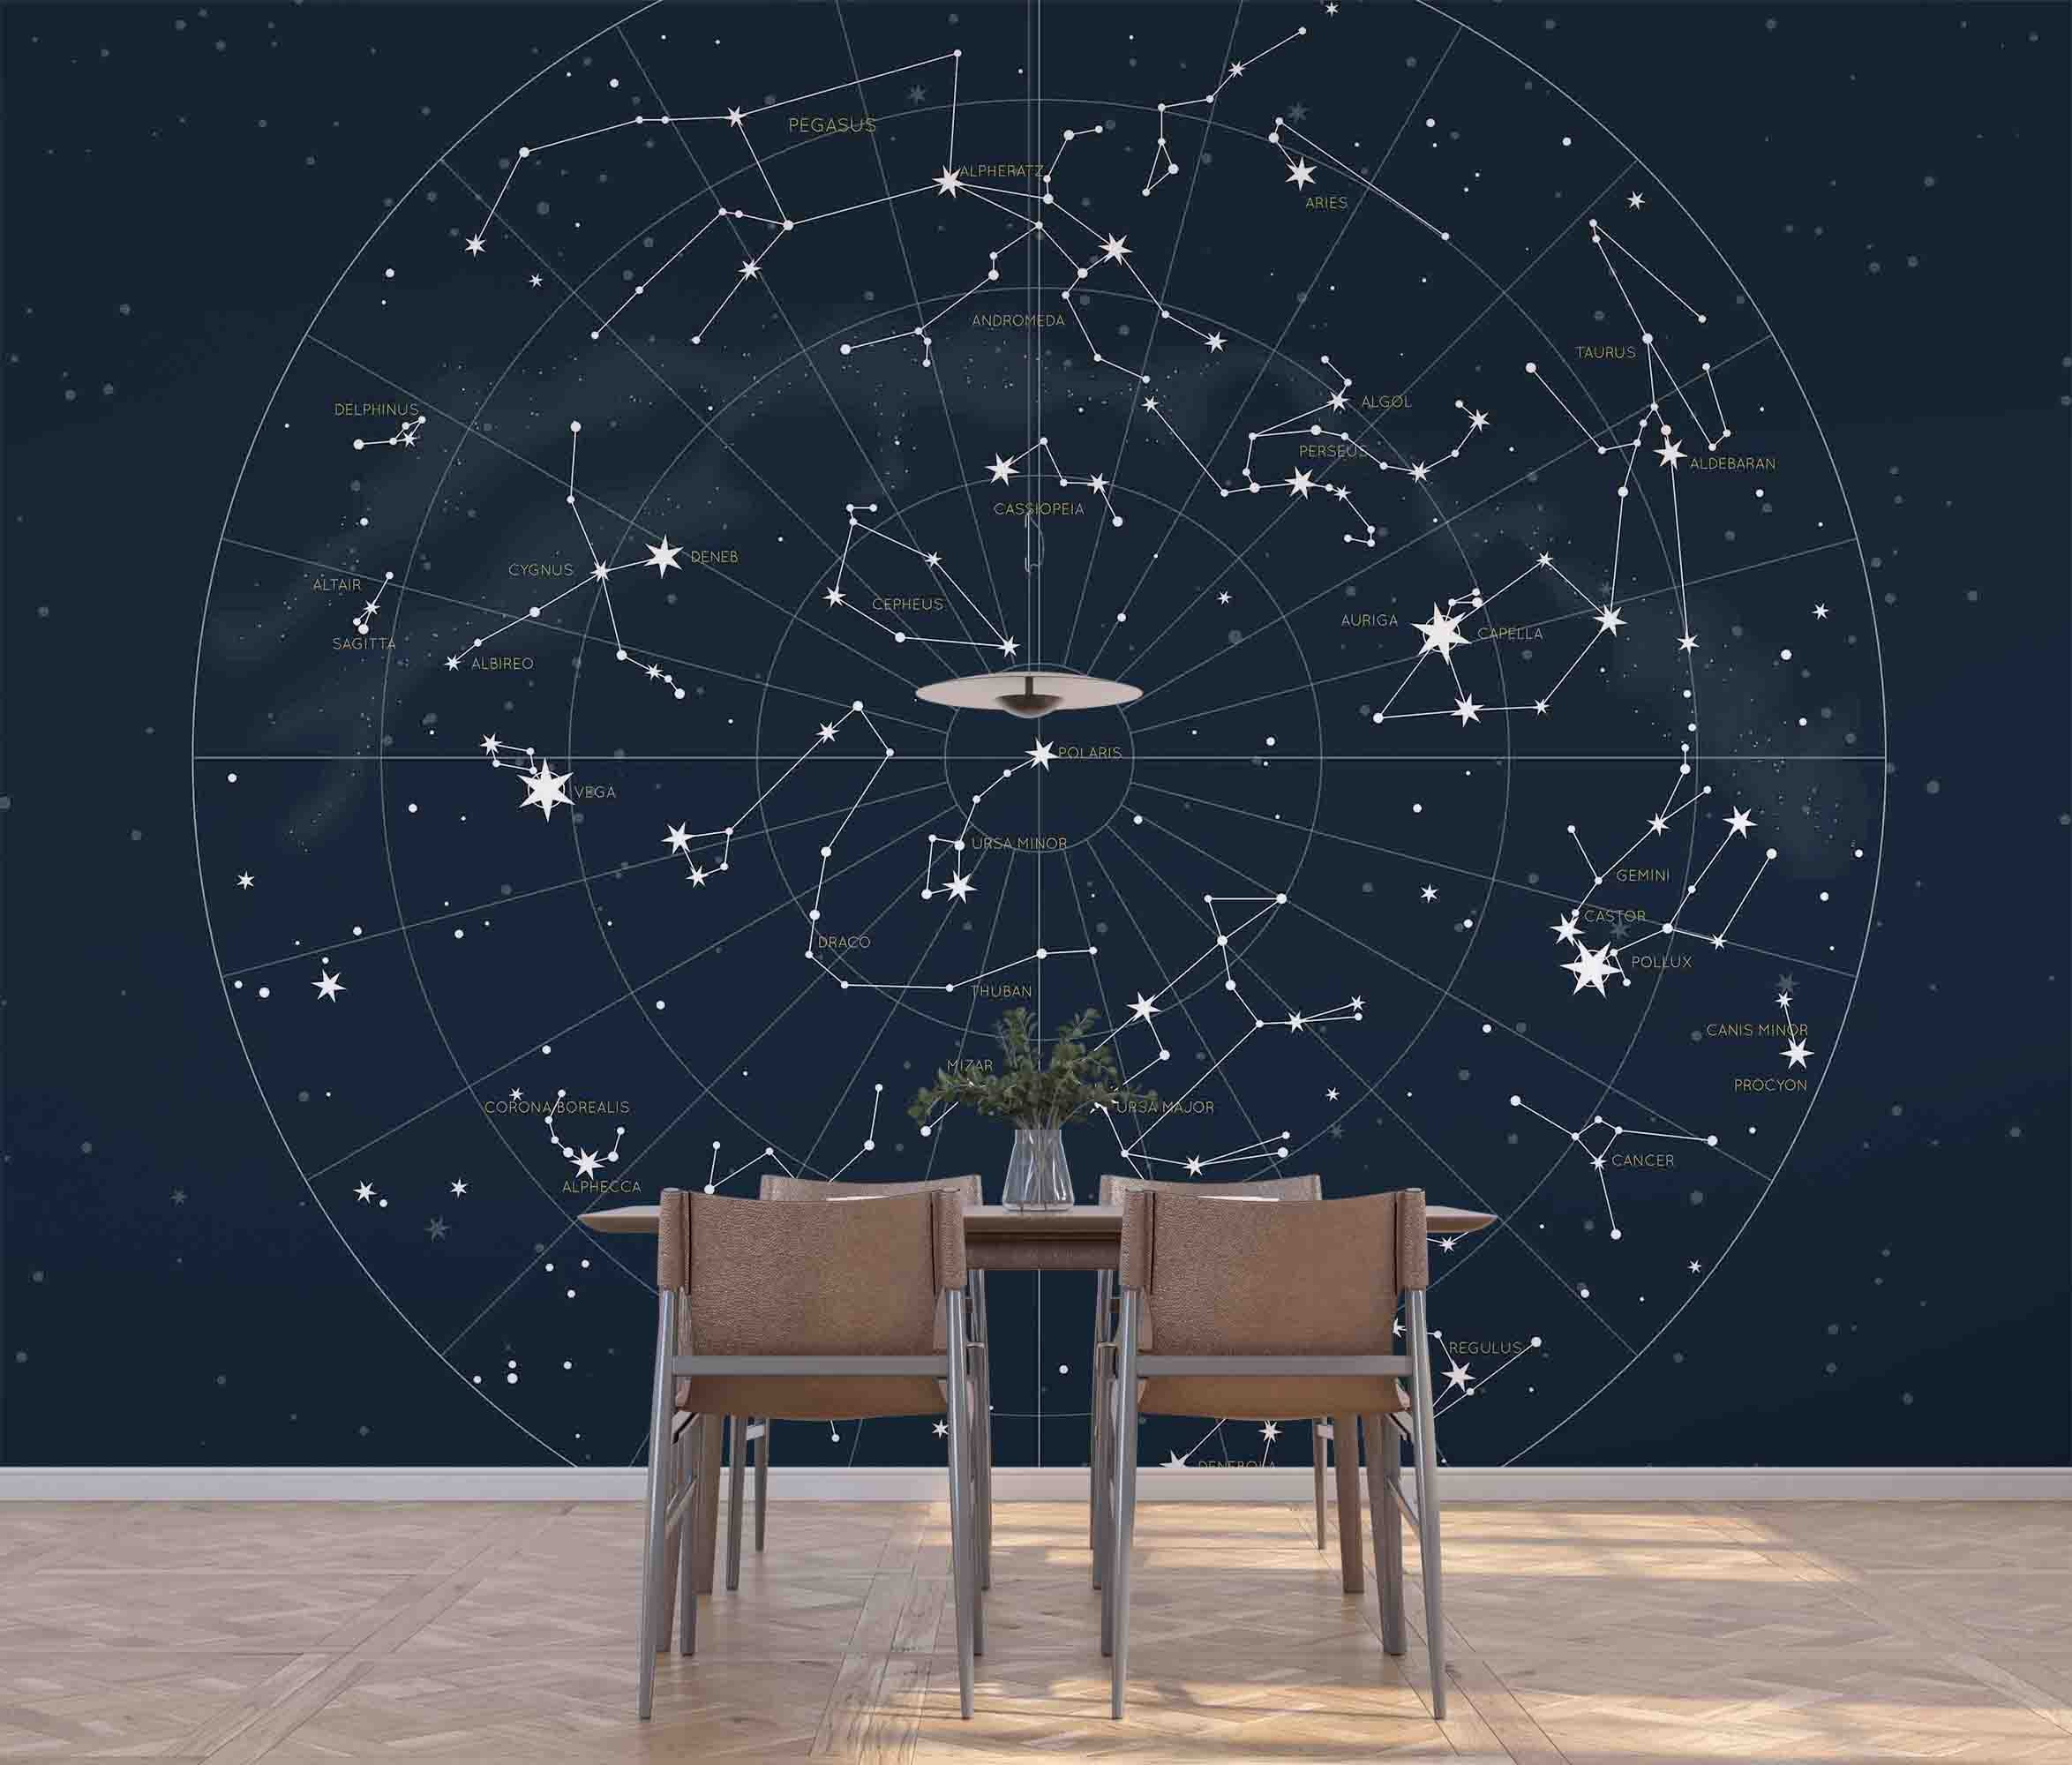 3D Northern Hemisphere Constellation Detailed Star Map Wall Mural Wallpaper GD 4521- Jess Art Decoration